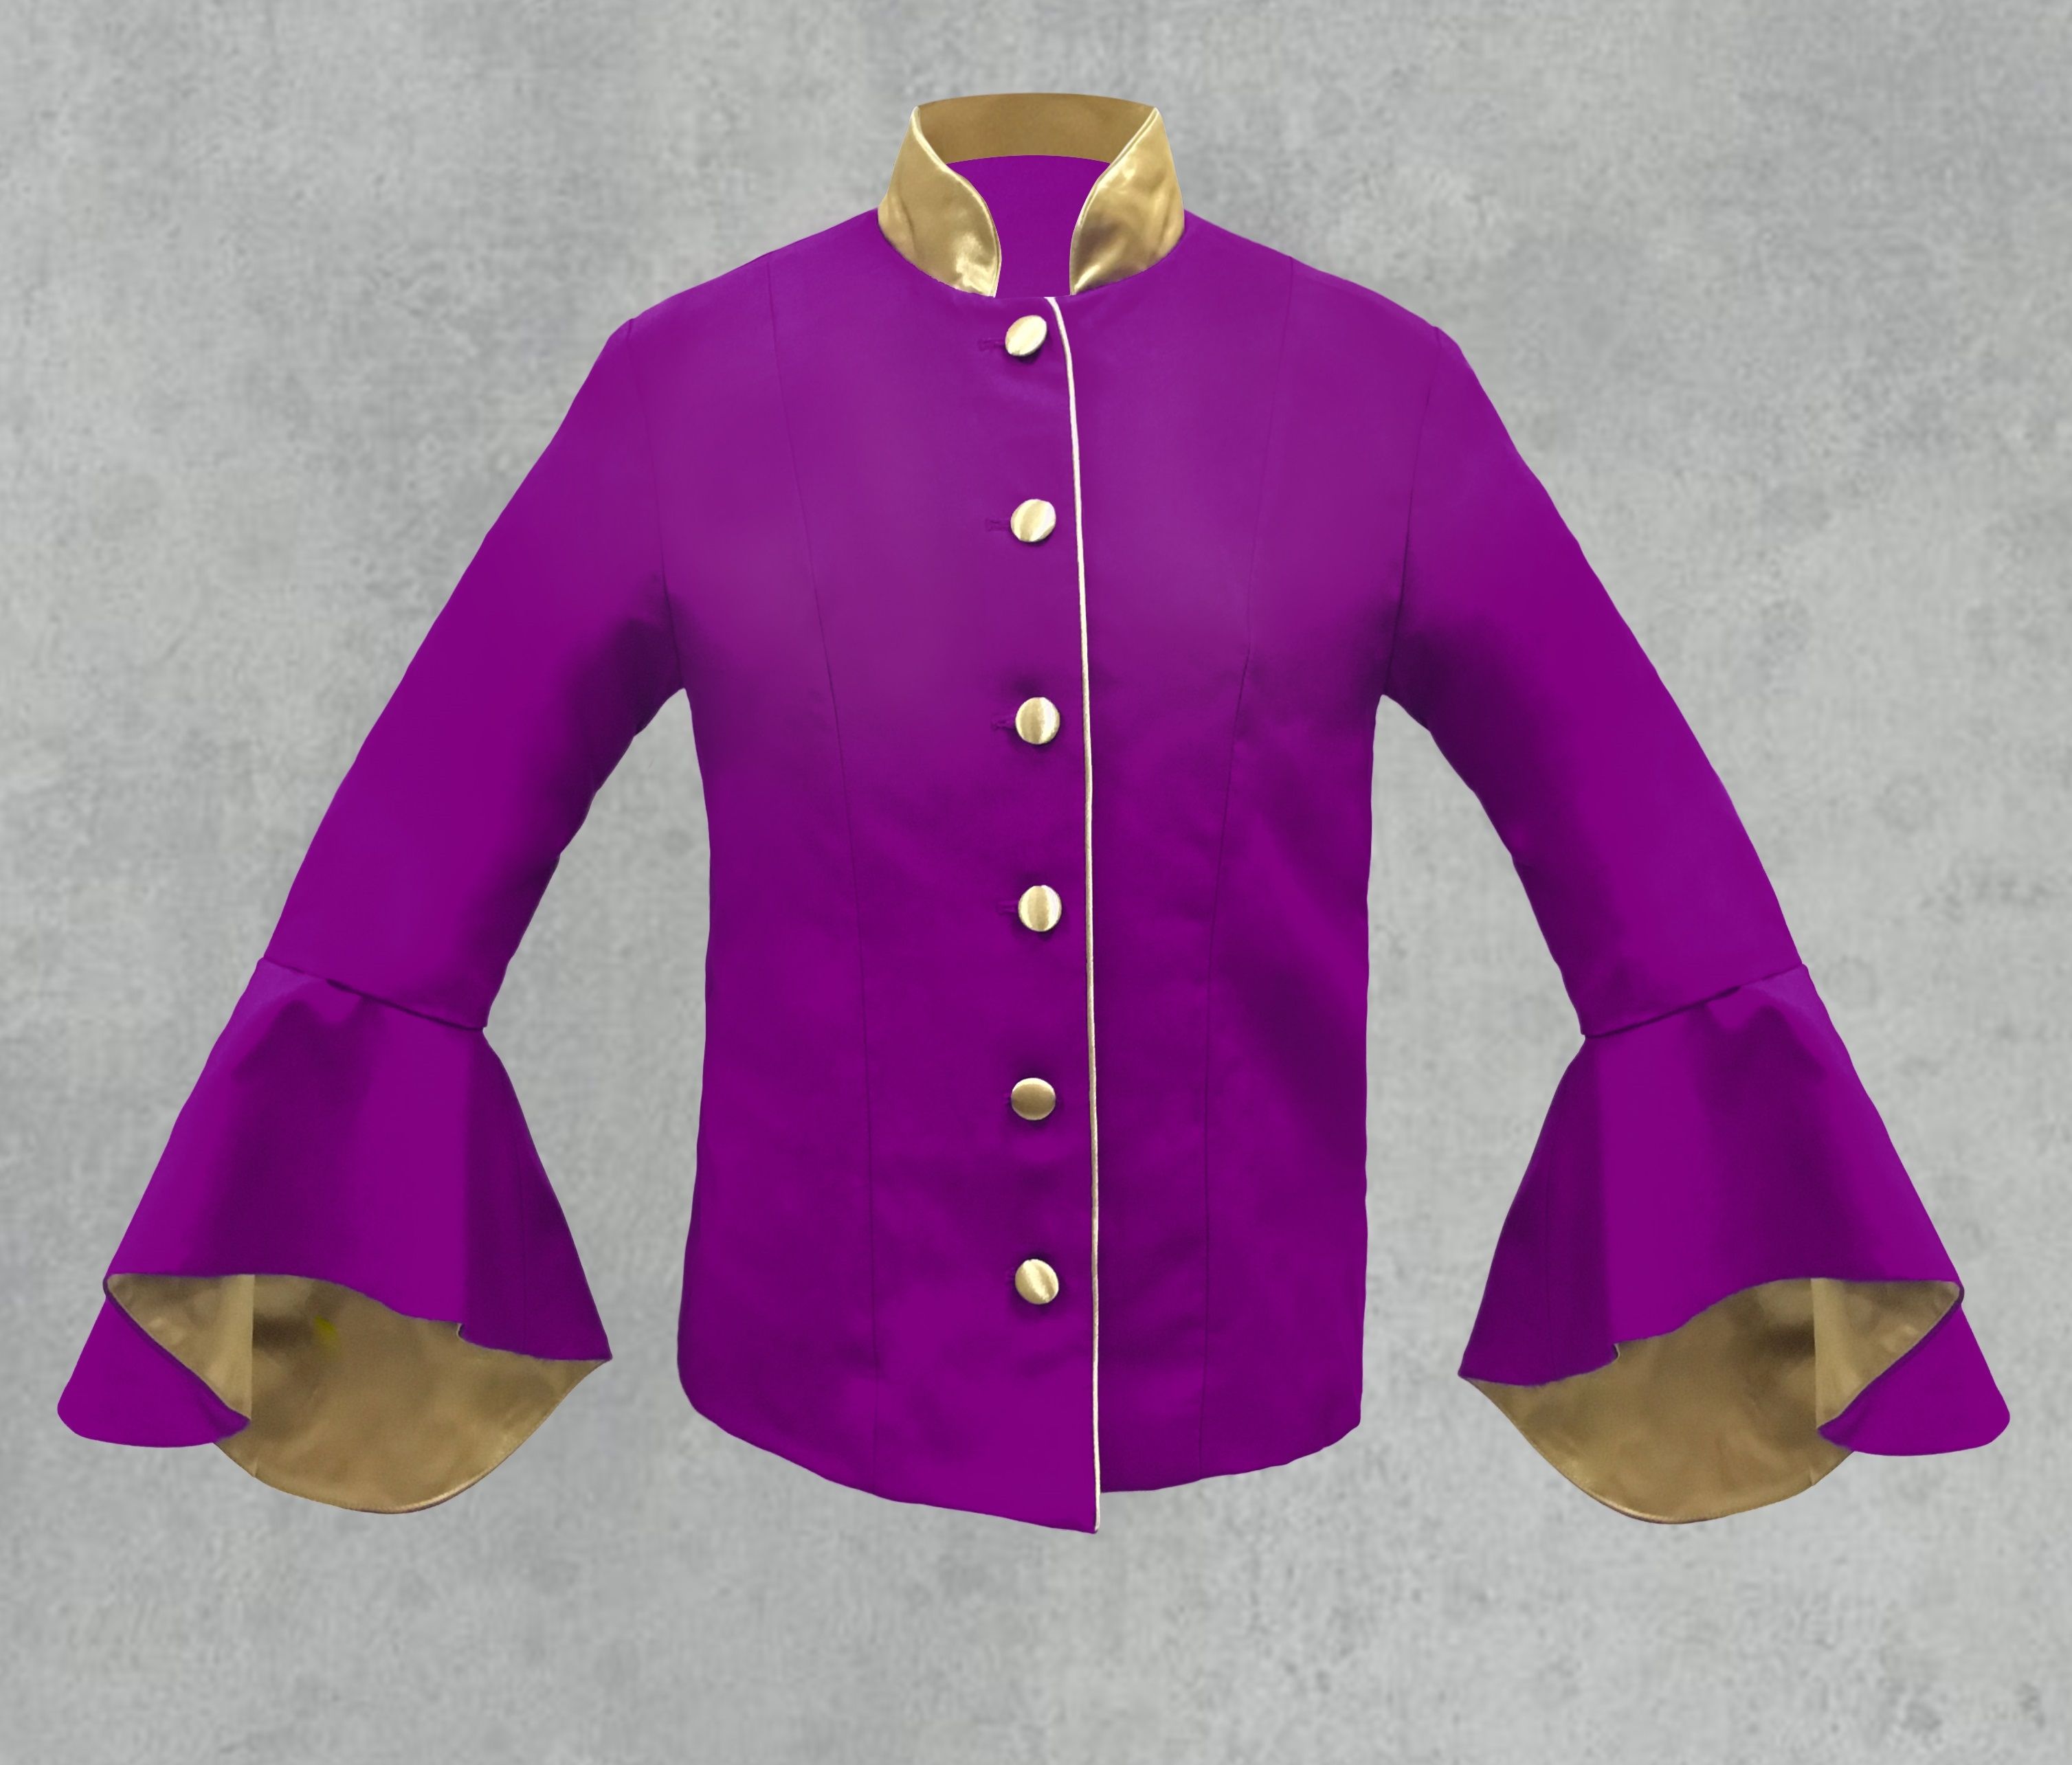 purple dress jacket ladies